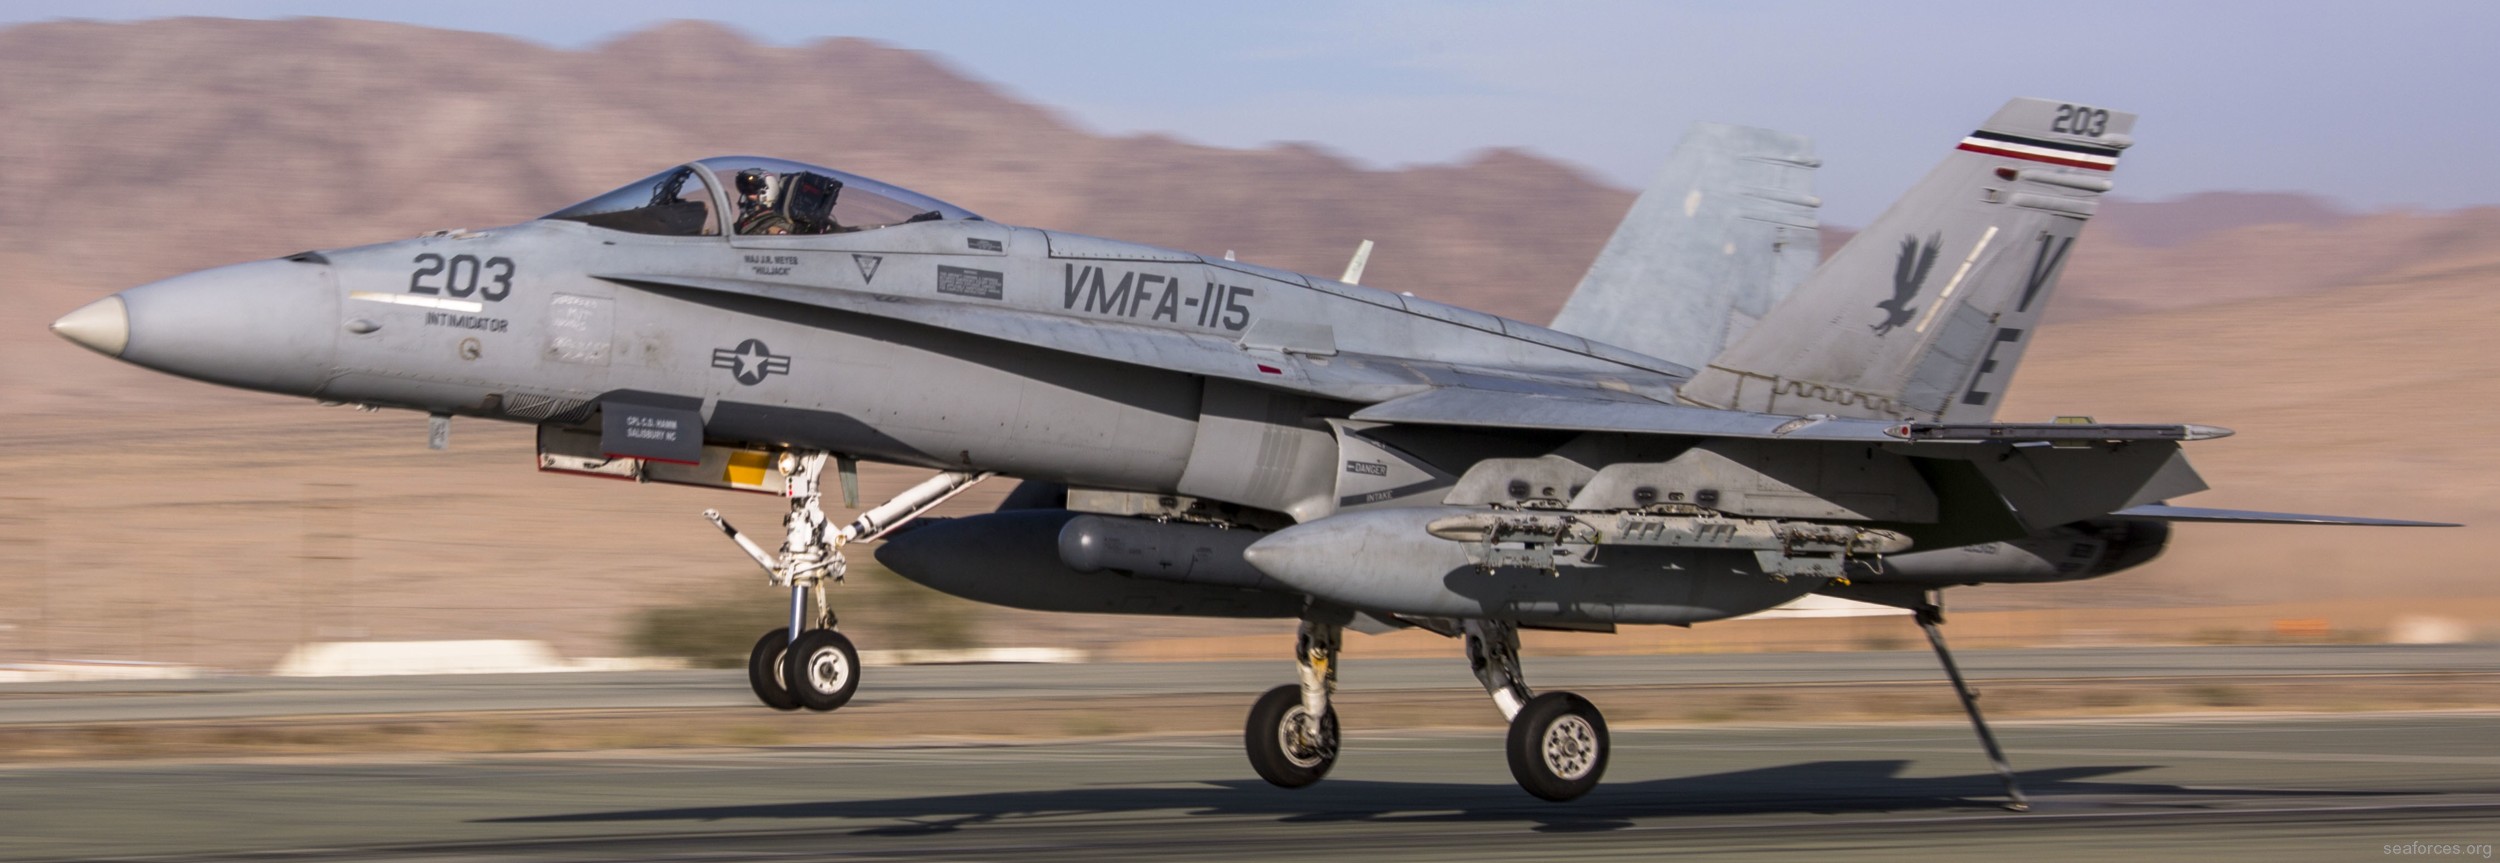 vmfa-115 silver eagles marine fighter attack squadron f/a-18a+ hornet 119